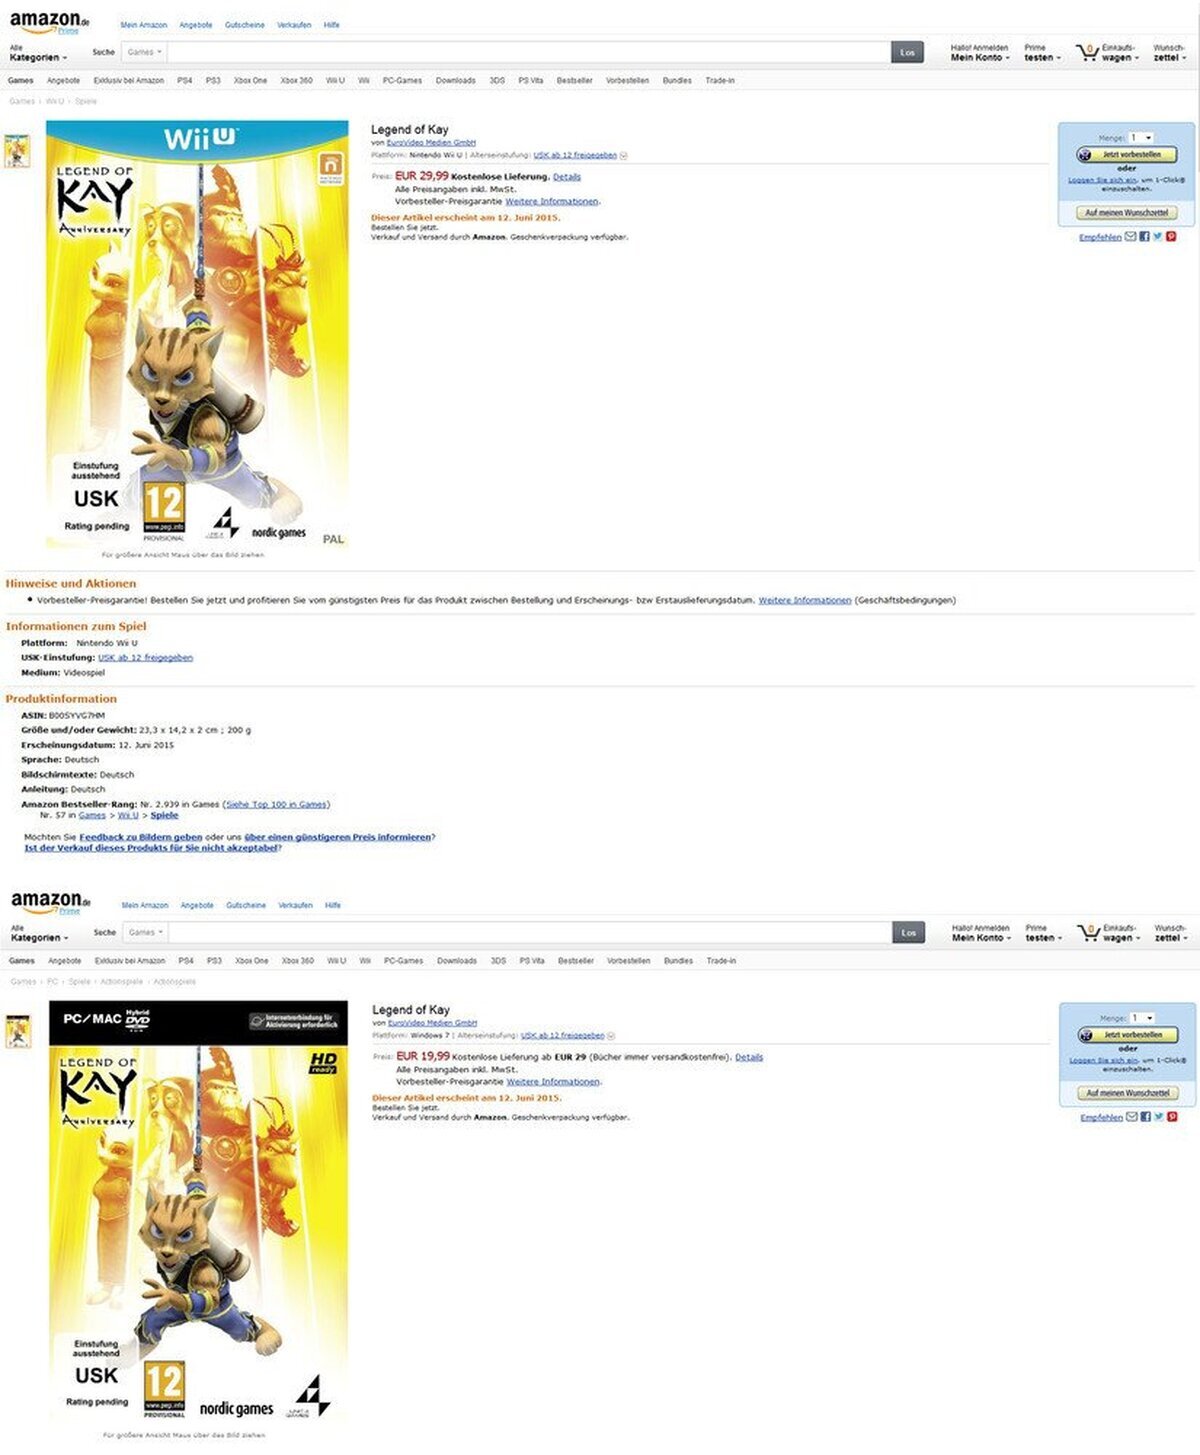 Amazon lista Legend of Kay Anniversary para PC y WiiU